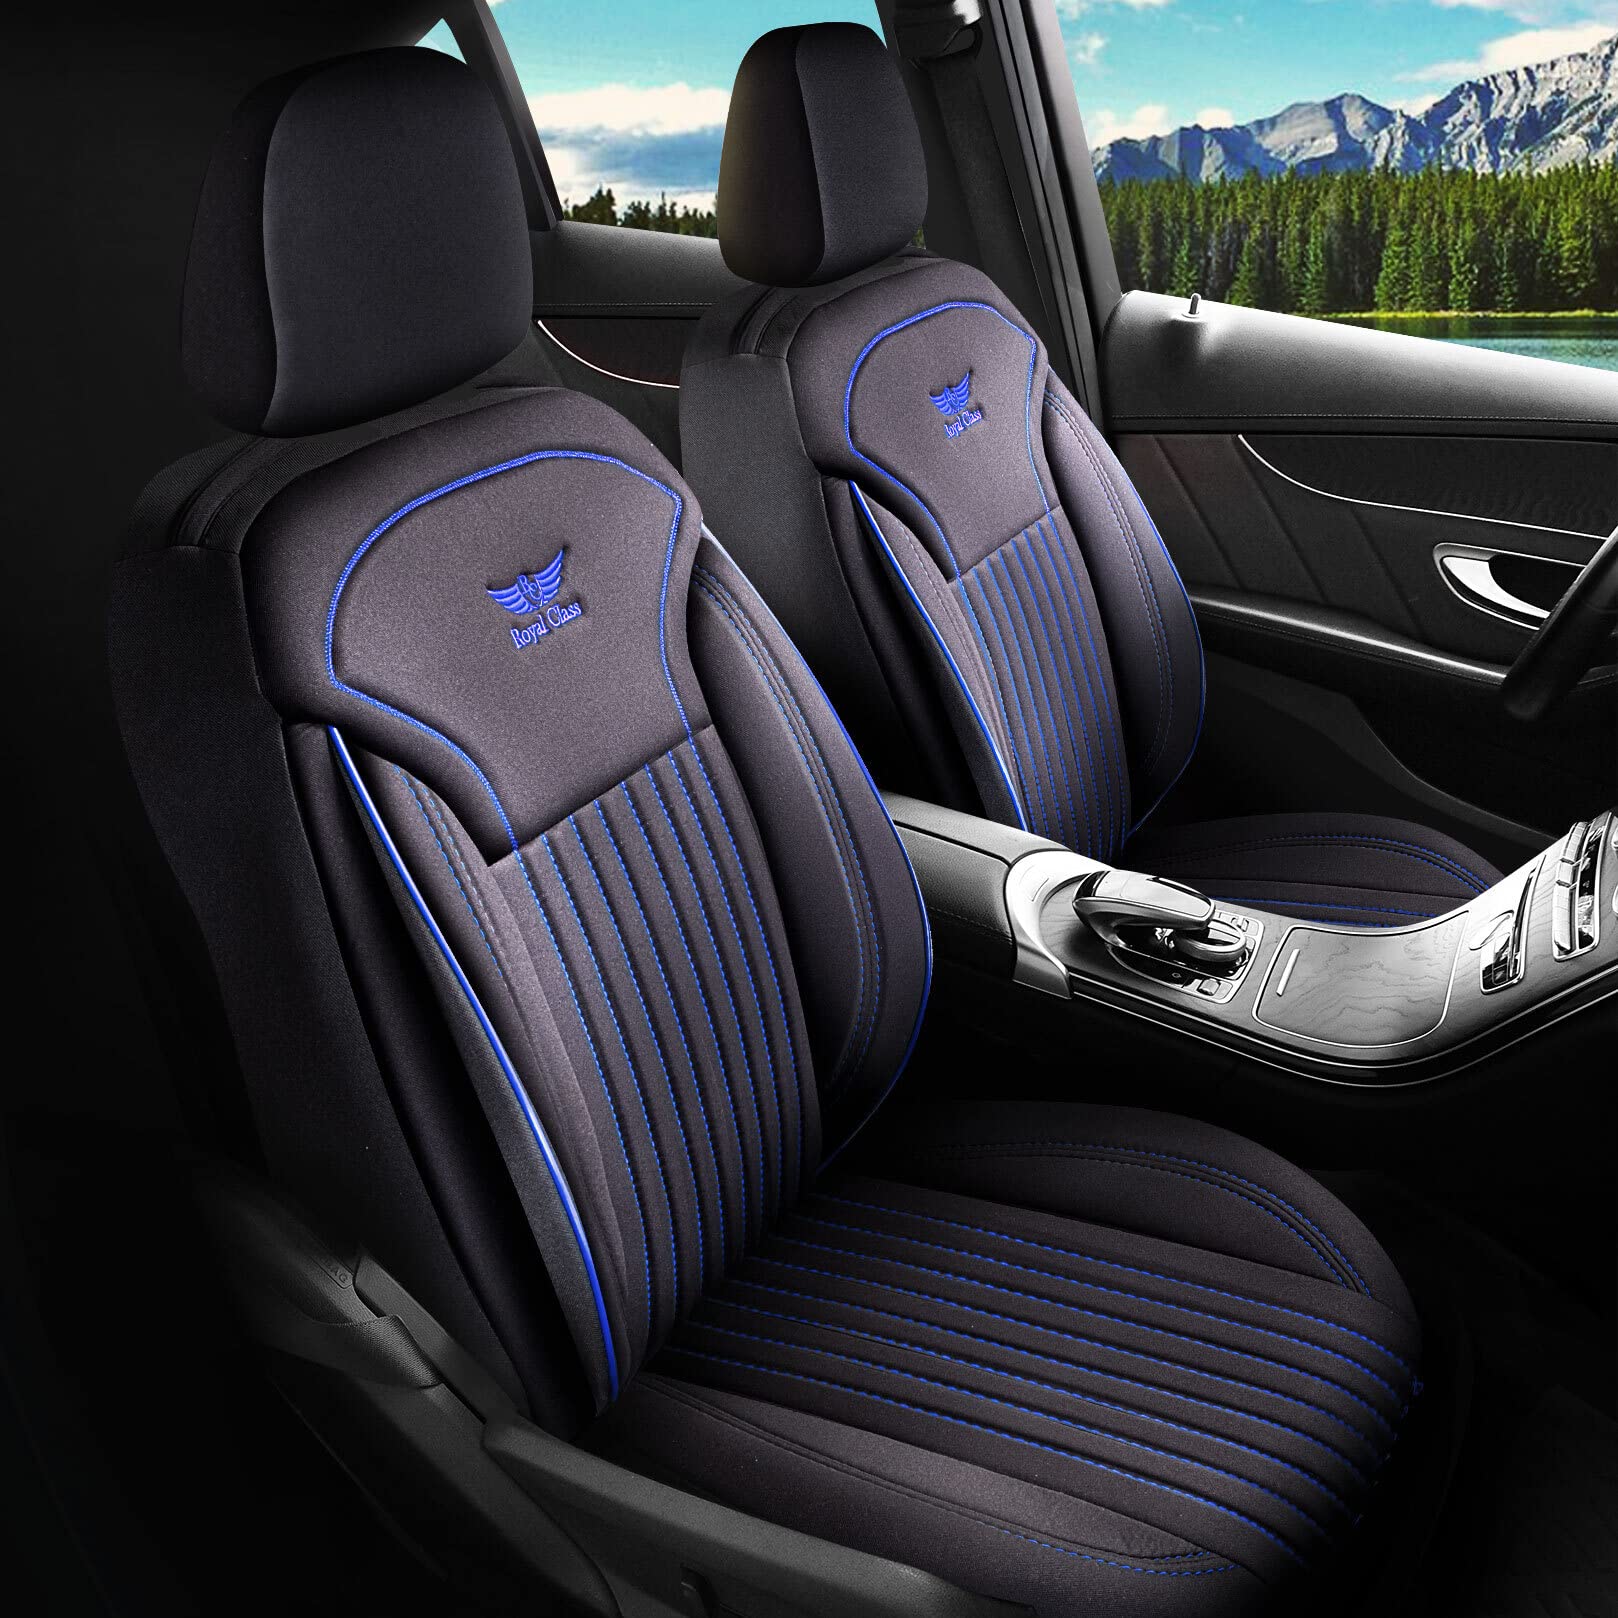 Royal Class Auto Sitzbezüge kompatibel für Nissan Leaf in Schwarz Blau Fahrer und Beifahrer, Autositzbezug Schonbezug Sitzbezug Auto Komplettset 2-Sitze von RC Royal Class